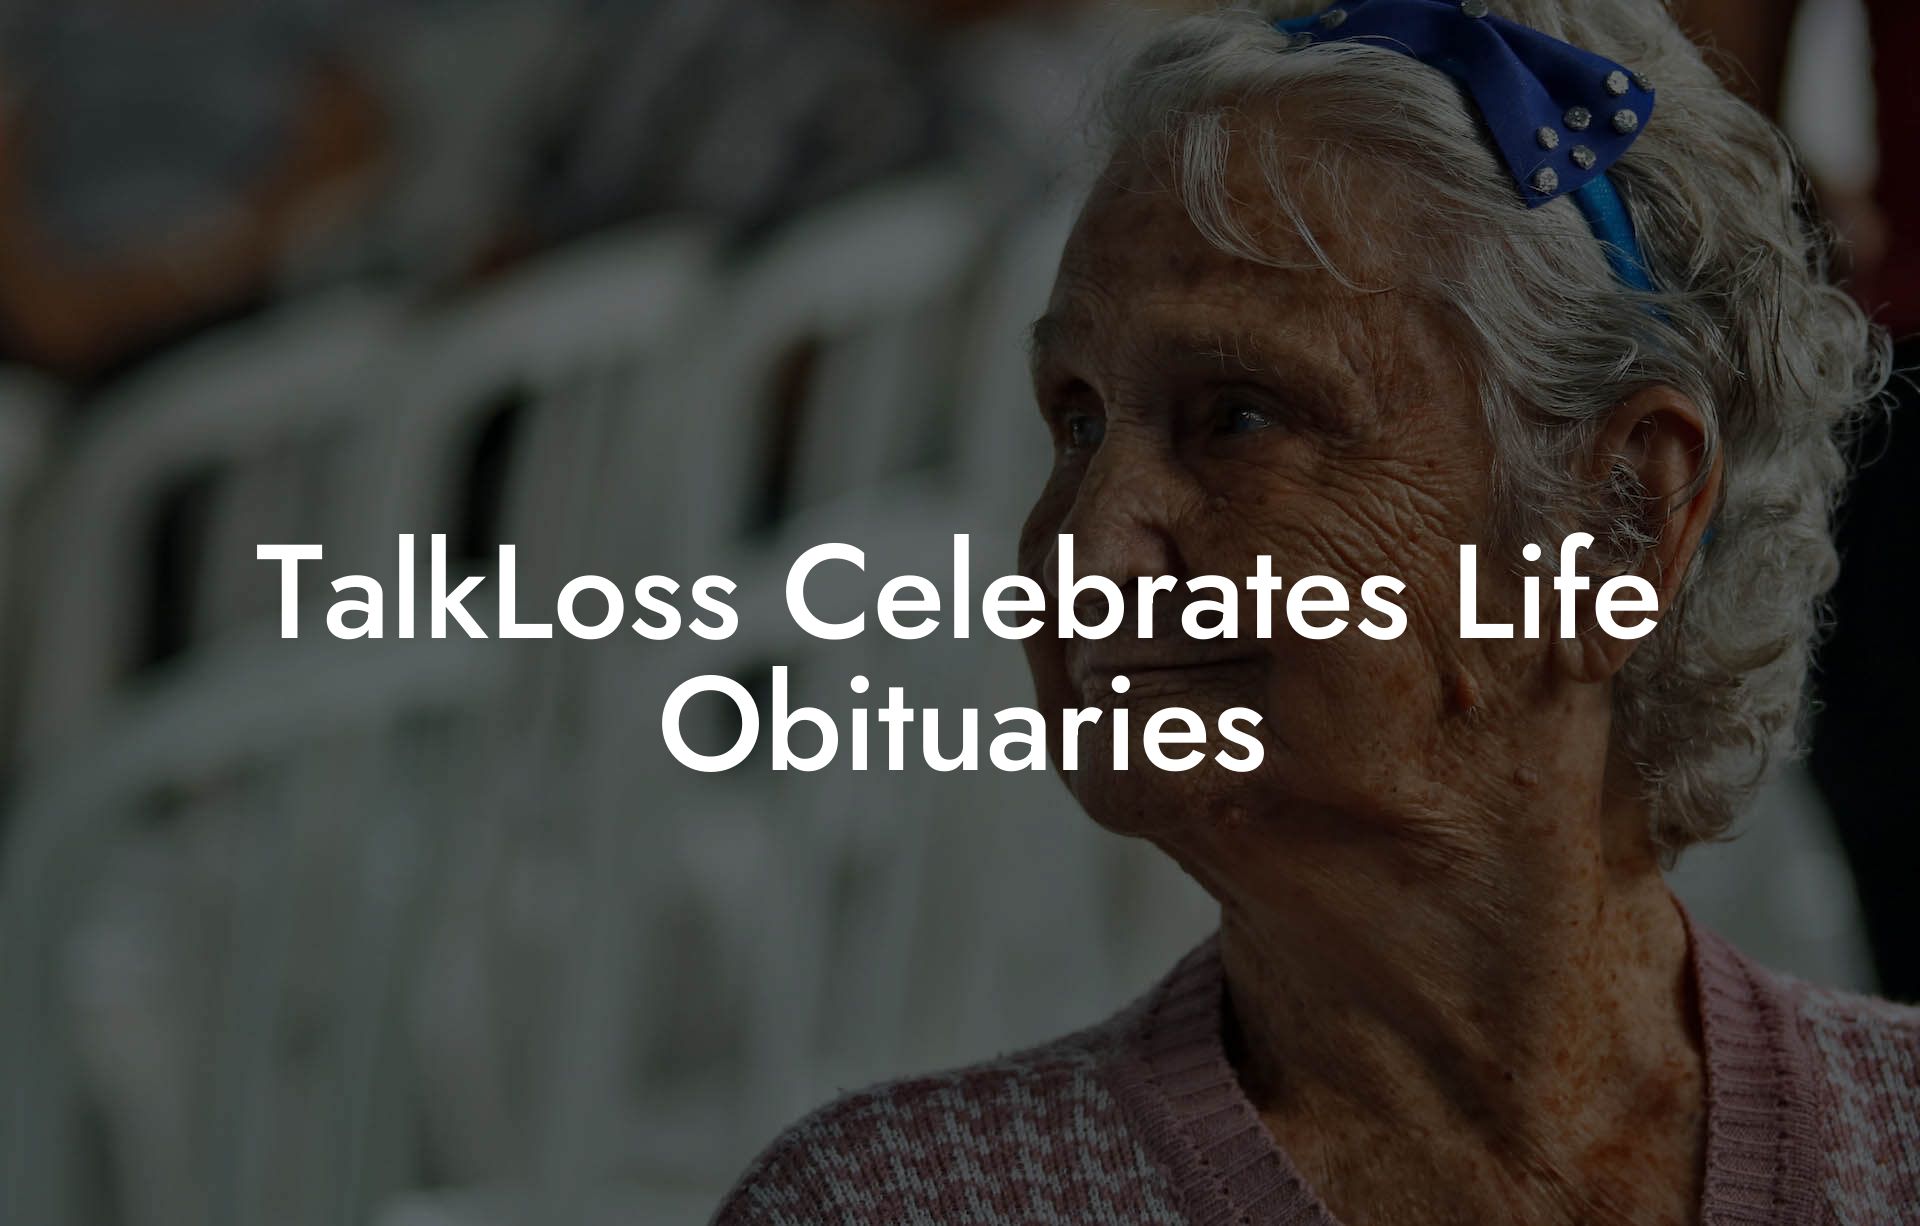 TalkLoss Celebrates Life Obituaries